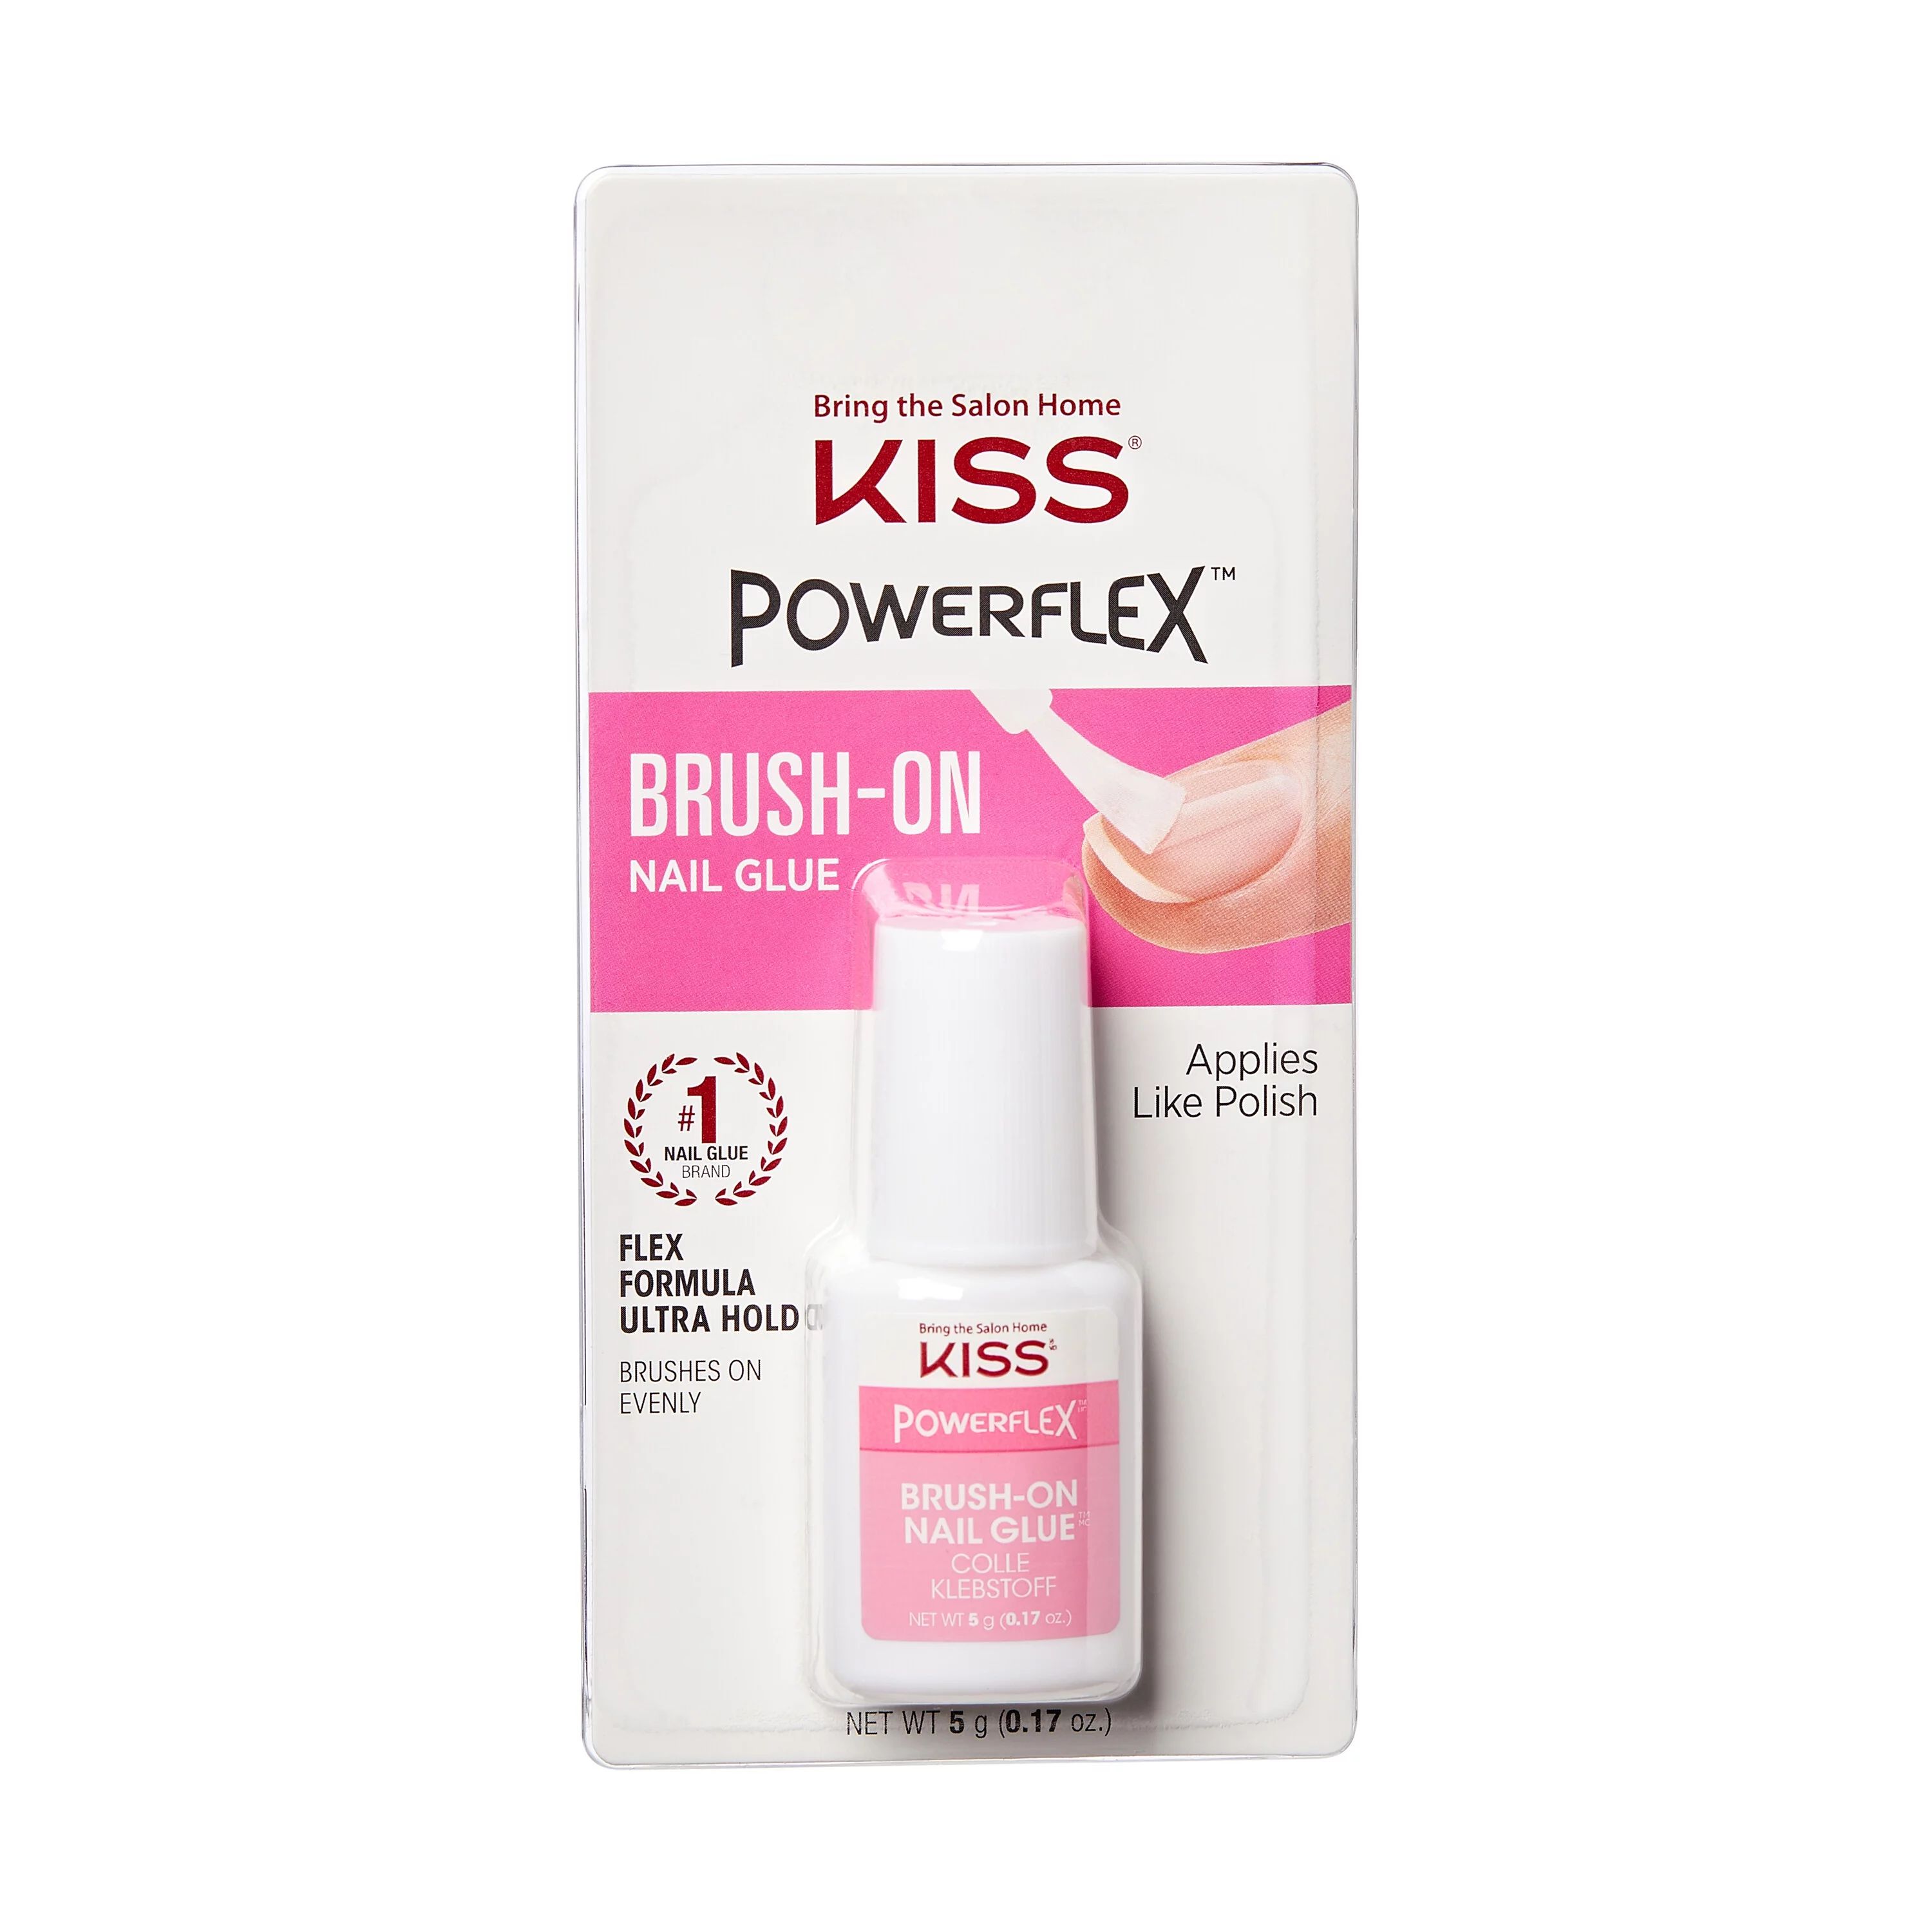 KISS PowerFlex Ultra Hold Brush-On Nail Glue, Net Wt. 5g (0.17 oz.) | Walmart (US)